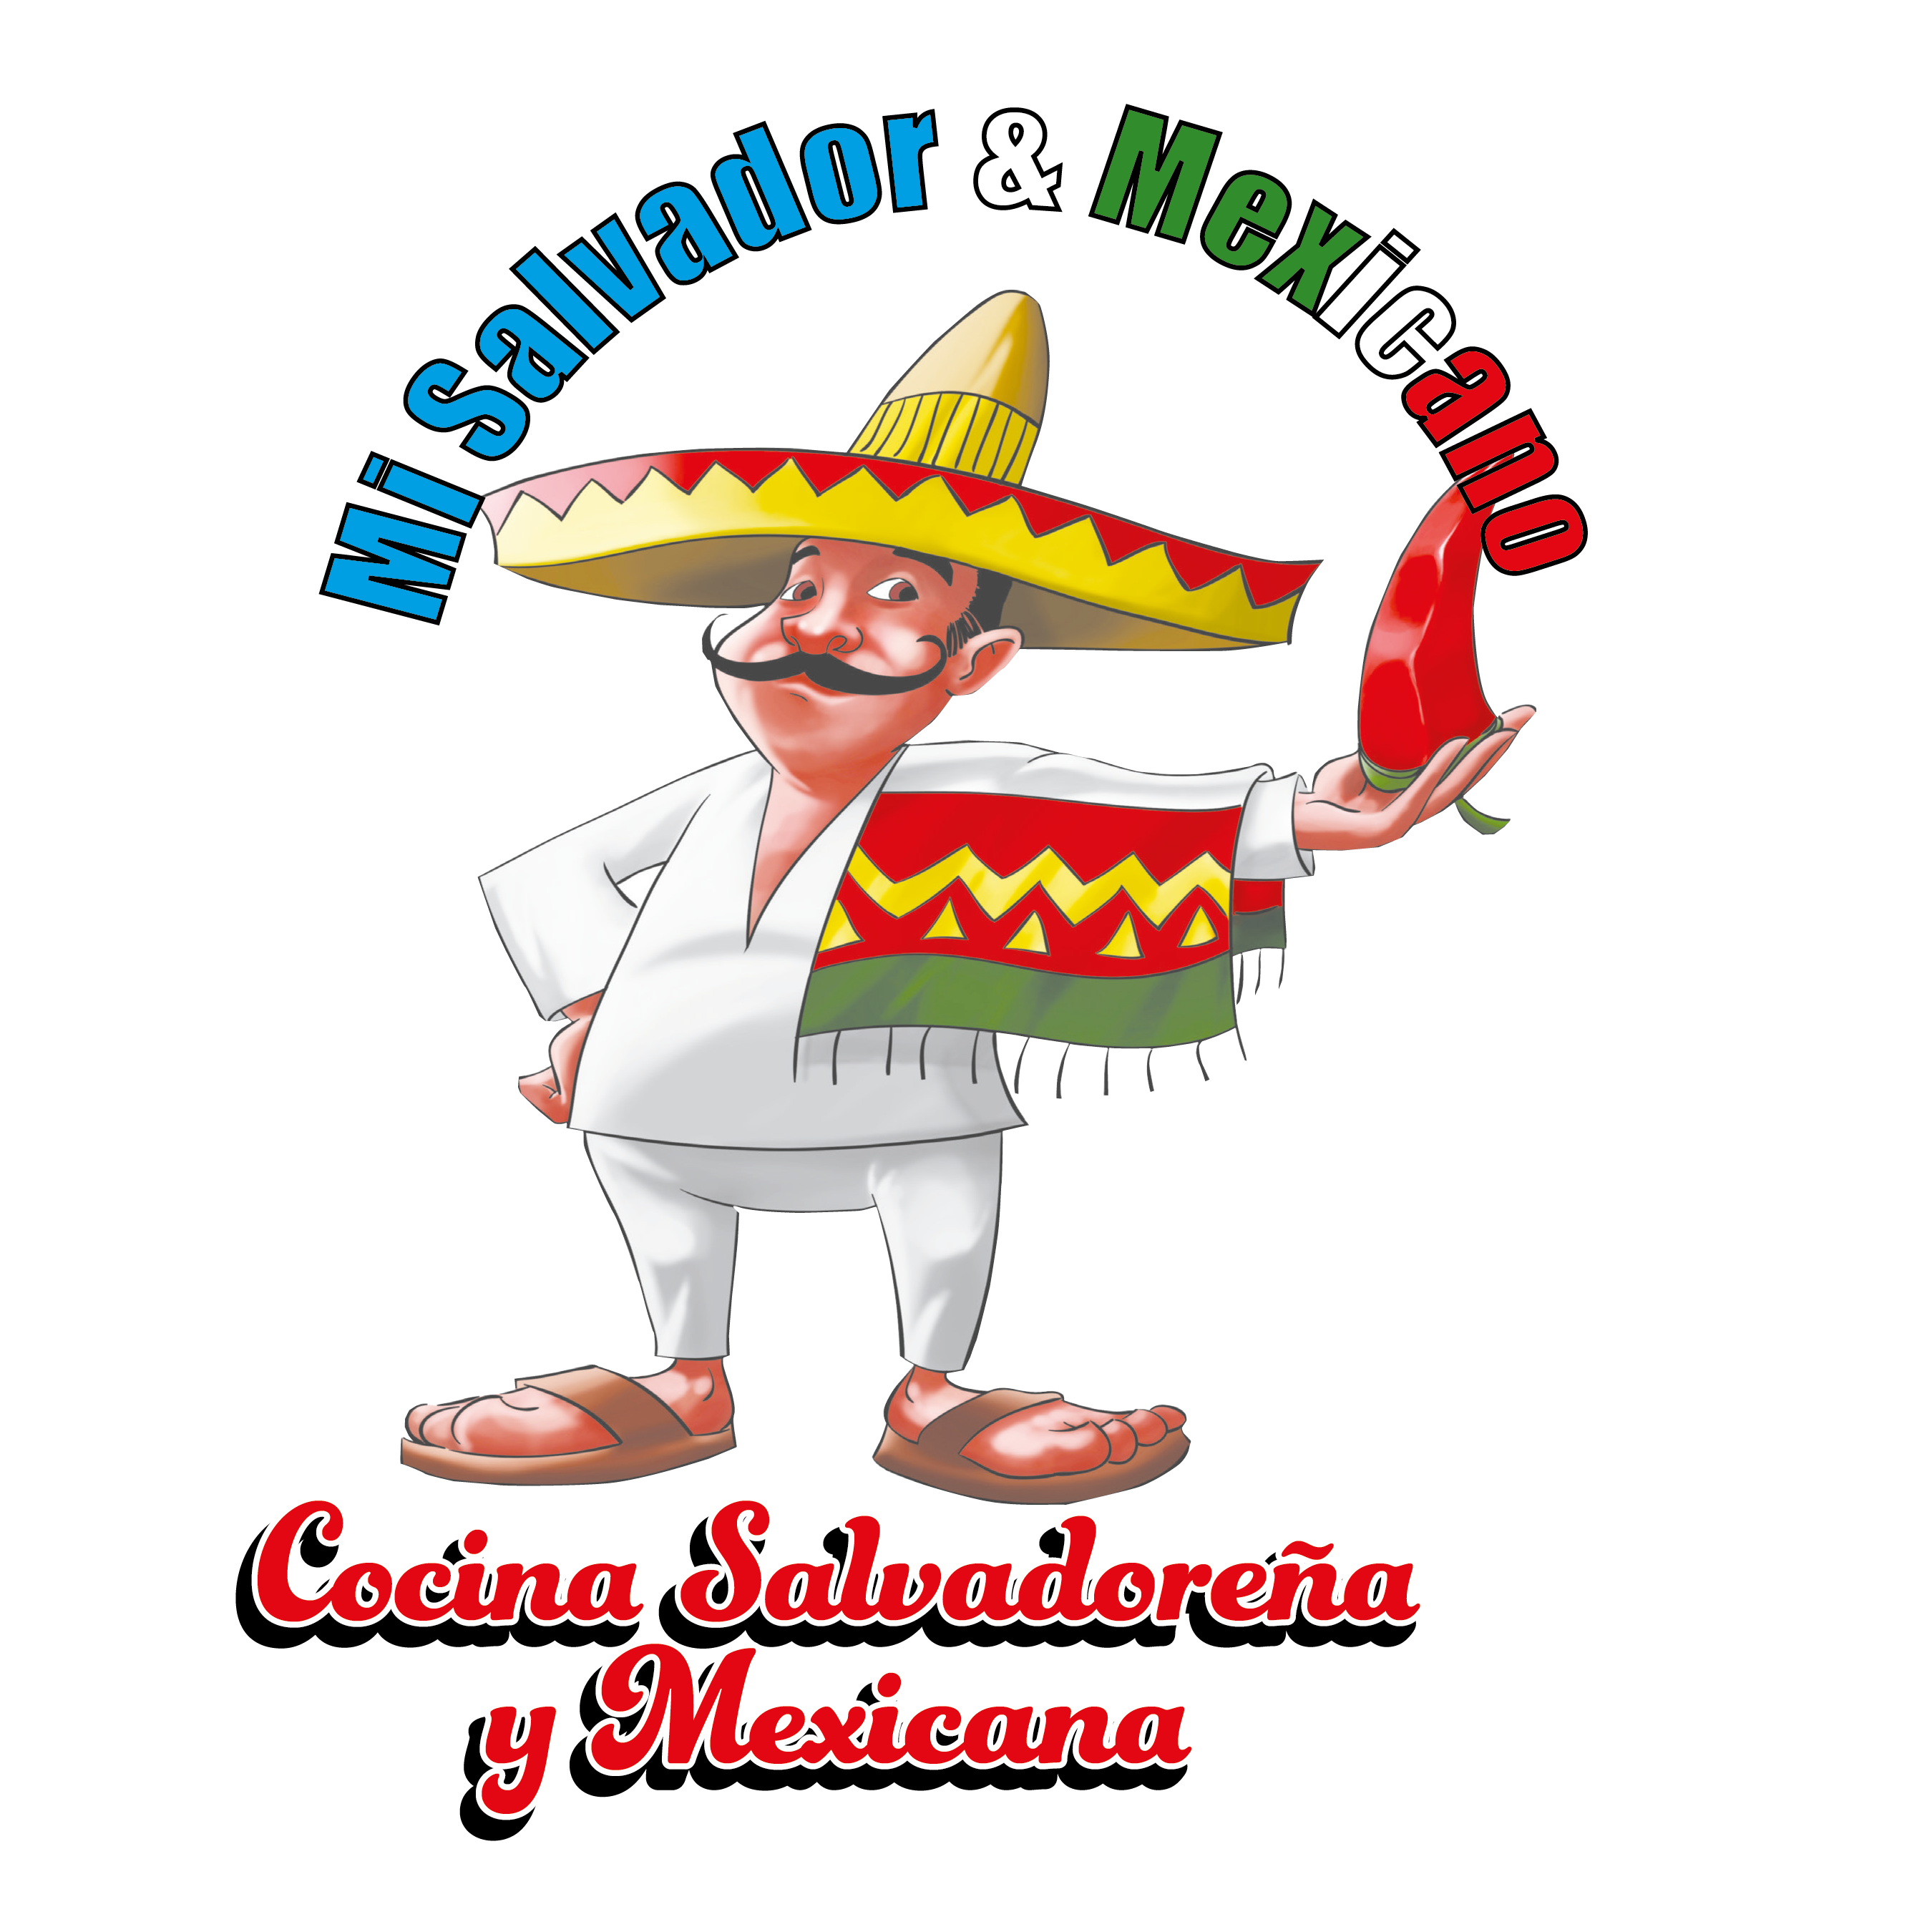 Mi Salvador & Mexicano